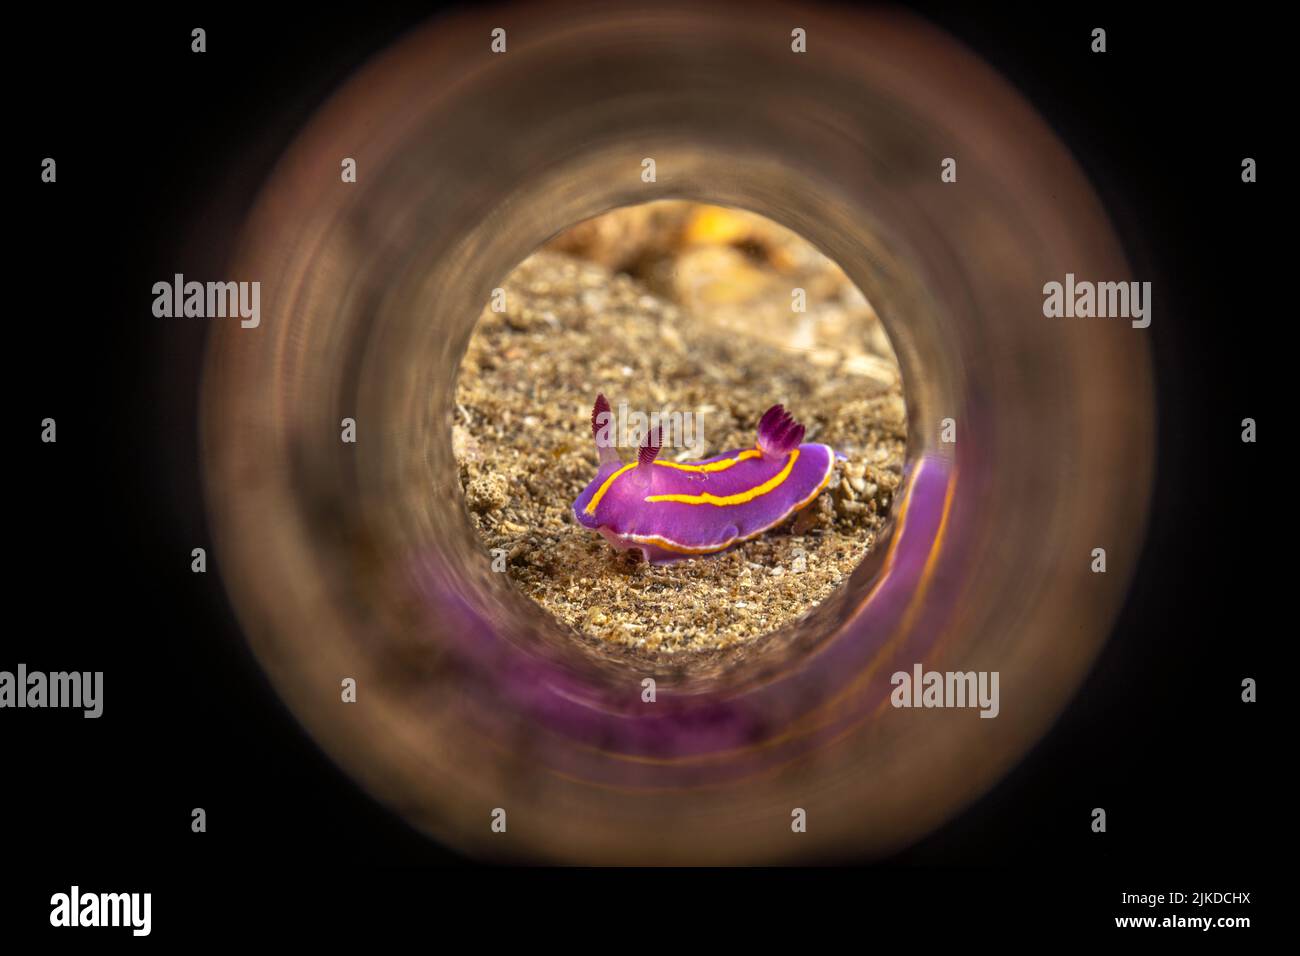 Un piccolo nudibranco di aeolidi MacFarland che si arrampica su un fondo sabbioso. Girato attraverso un tubo magico riflettente. Foto Stock